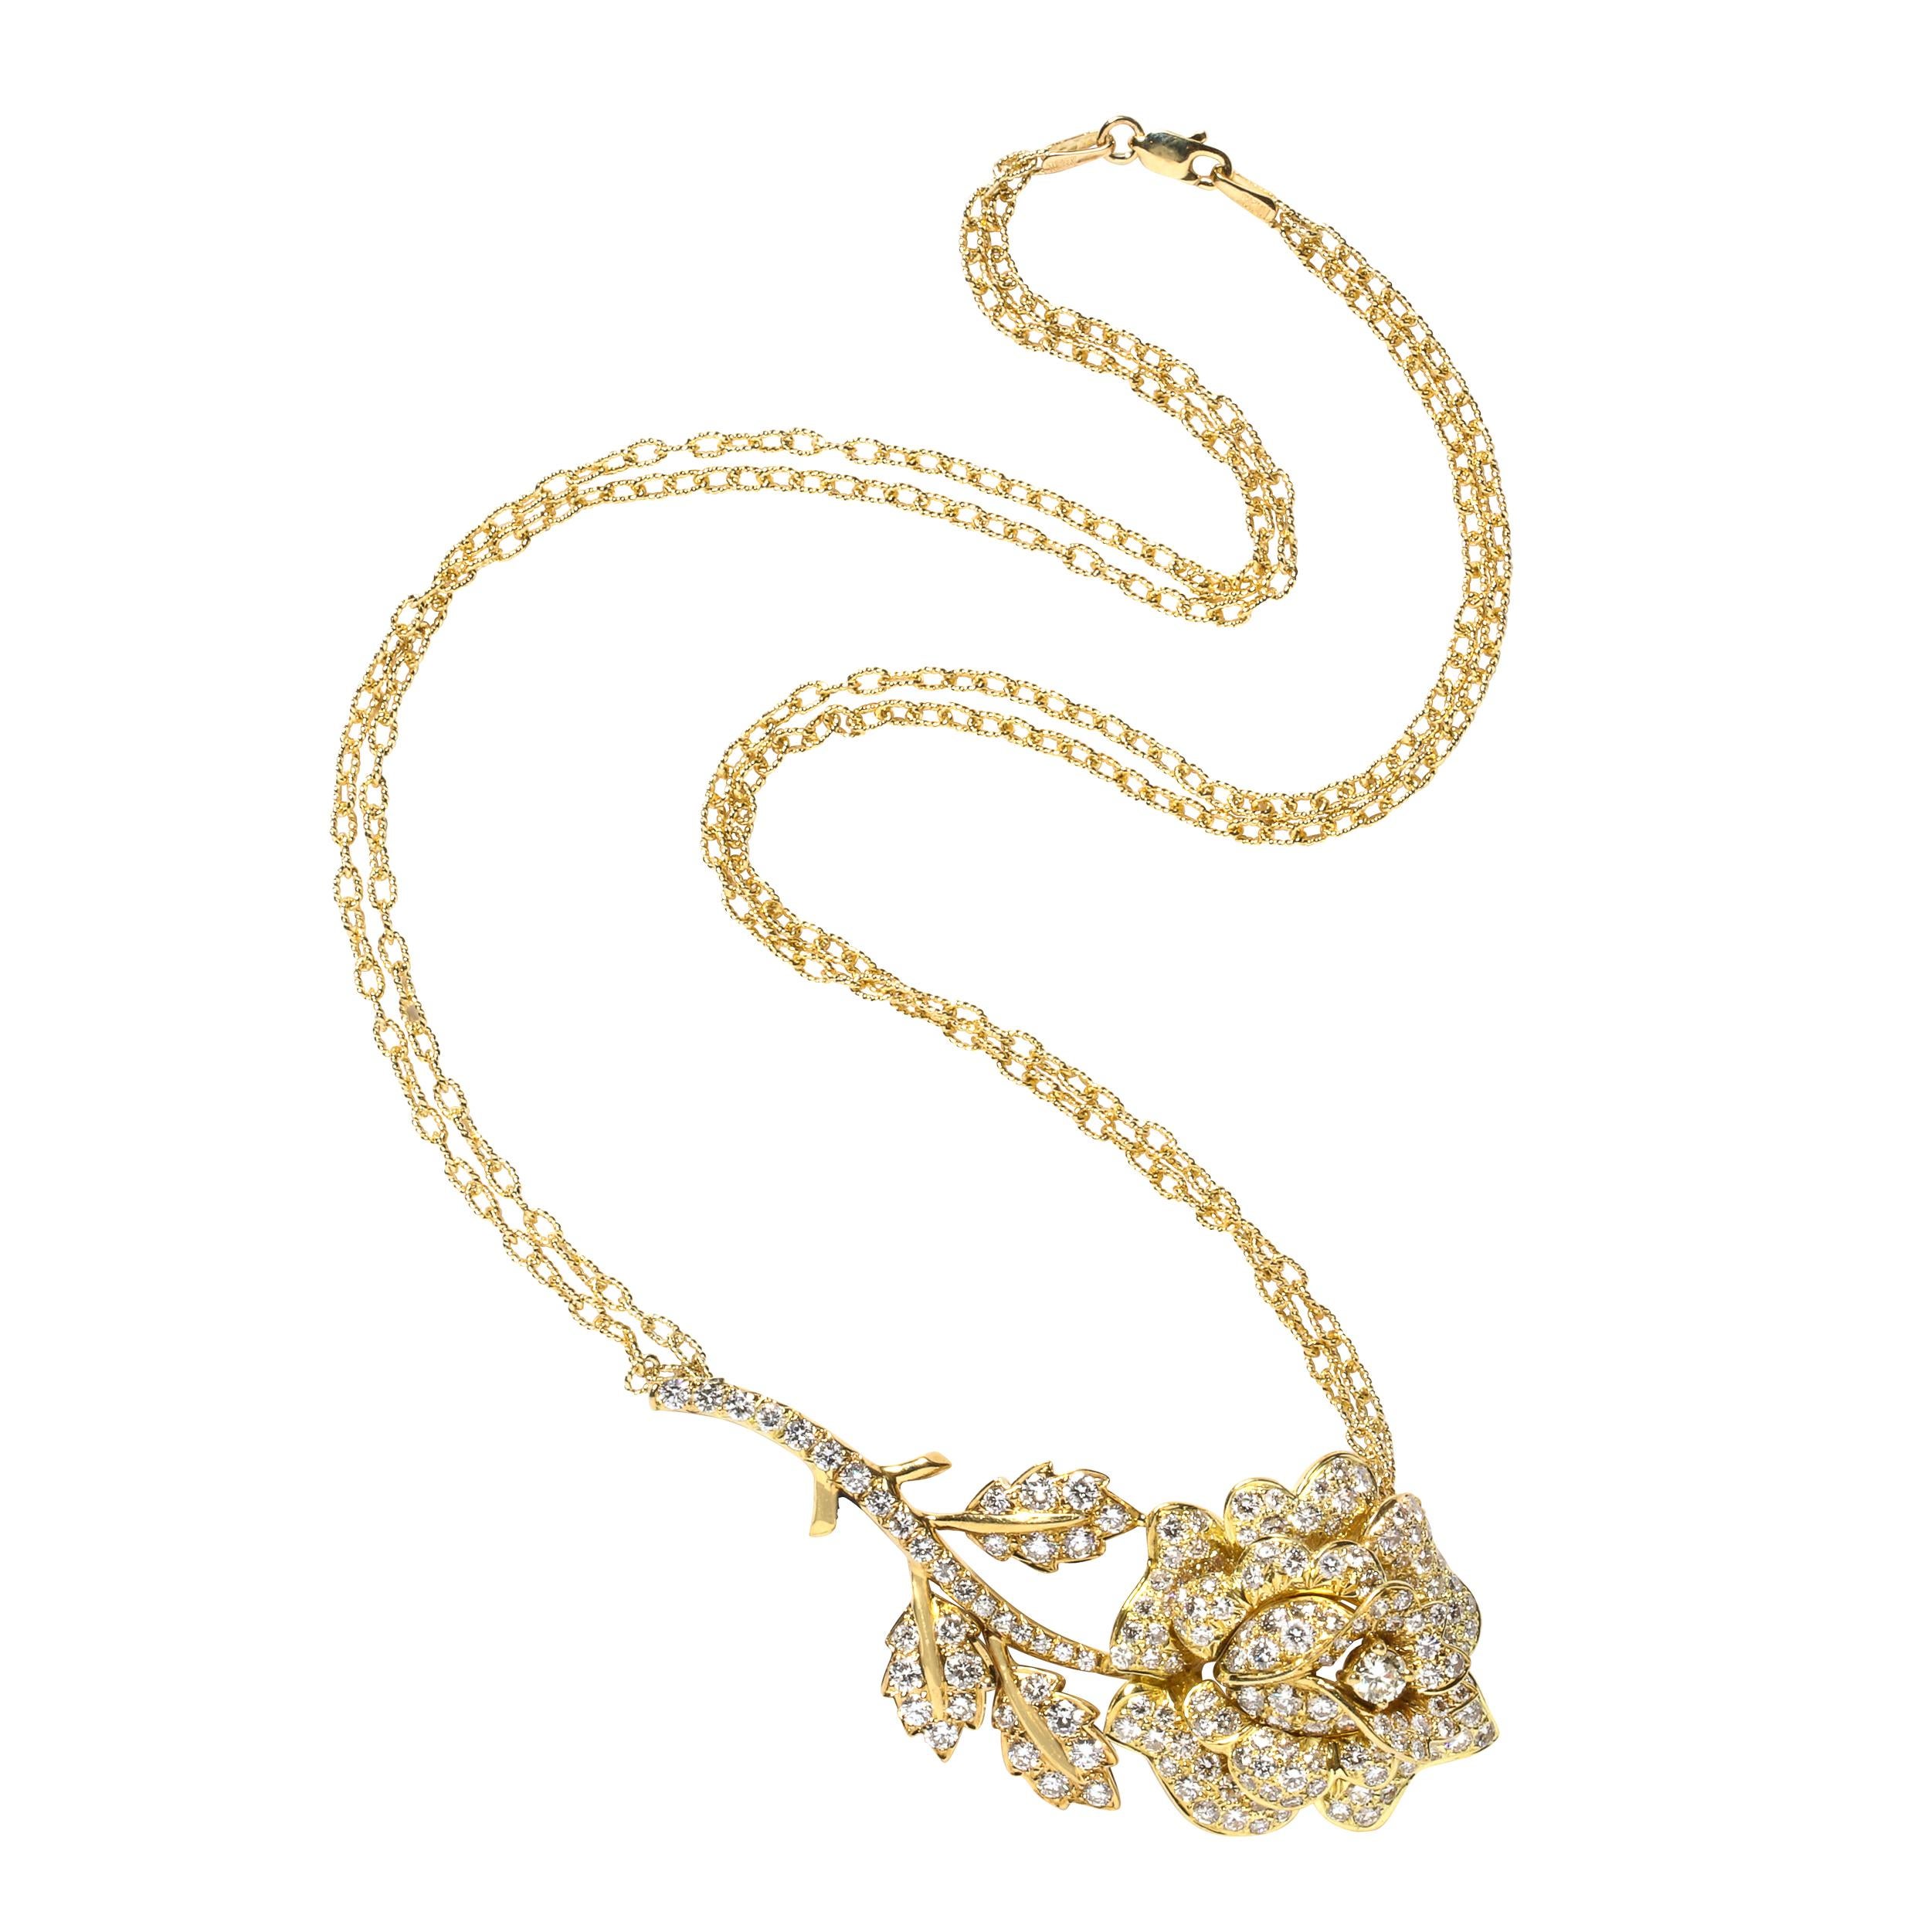 Ce superbe collier moderniste a été réalisé en Italie au cours de la seconde moitié du XXe siècle. Il représente une rose stylisée avec une fleur épanouie, des feuilles bifurquées et des épines en or jaune 18 carats et diamants. Le pendentif est